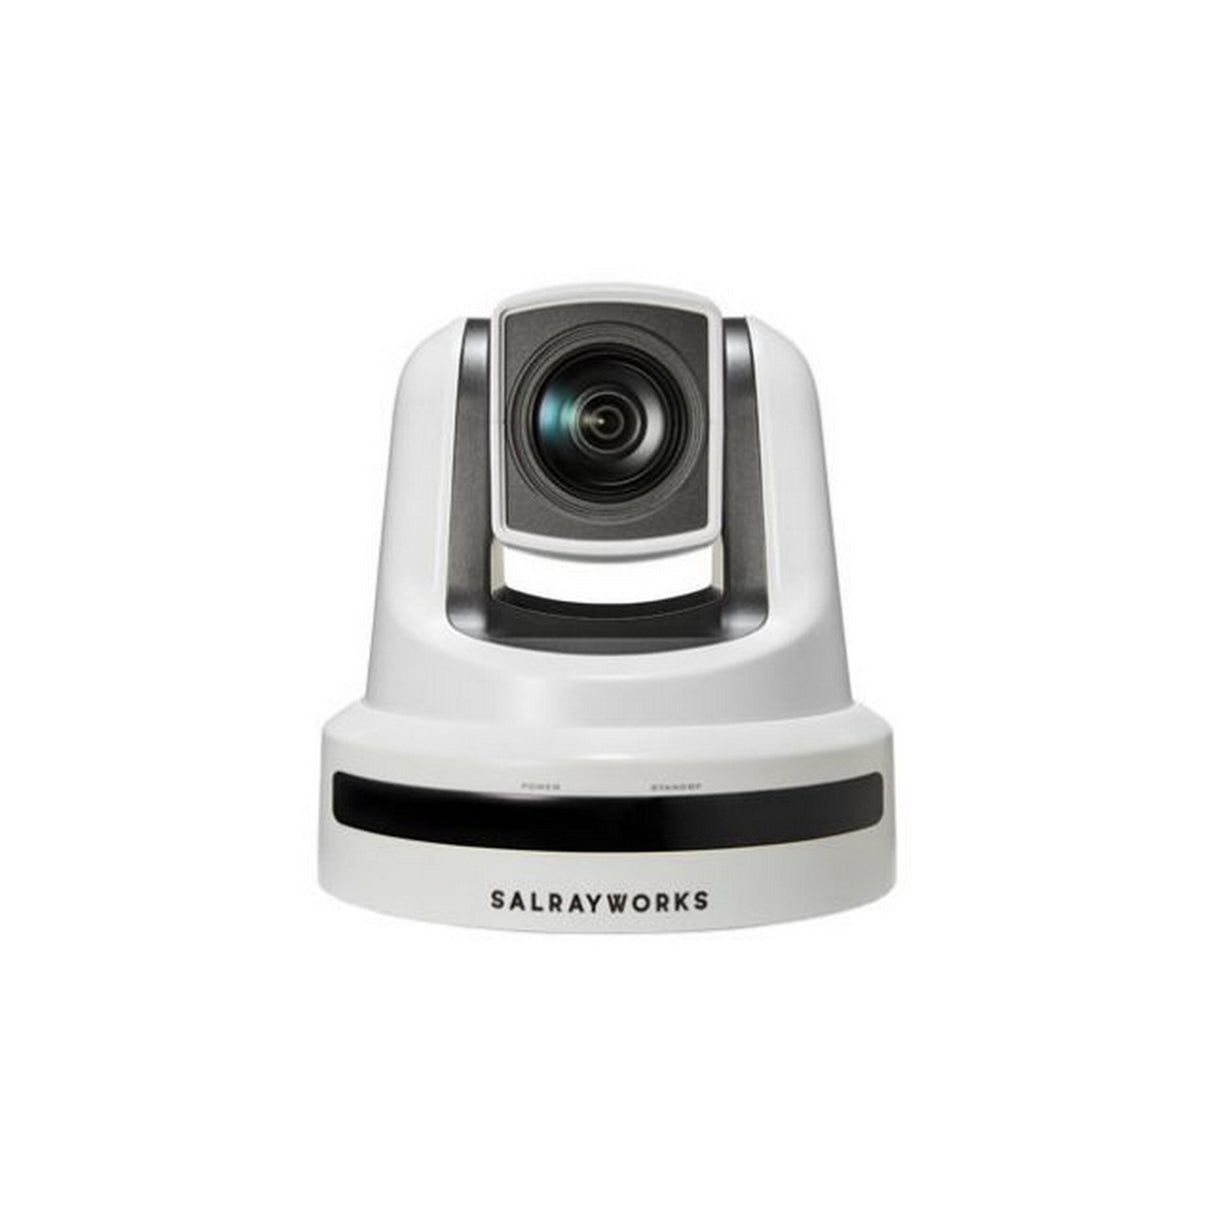 Salrayworks K-S30G-W Exmor R CMOS Sensor PTZ Camera with Sony Optical Zoom, Genlock White